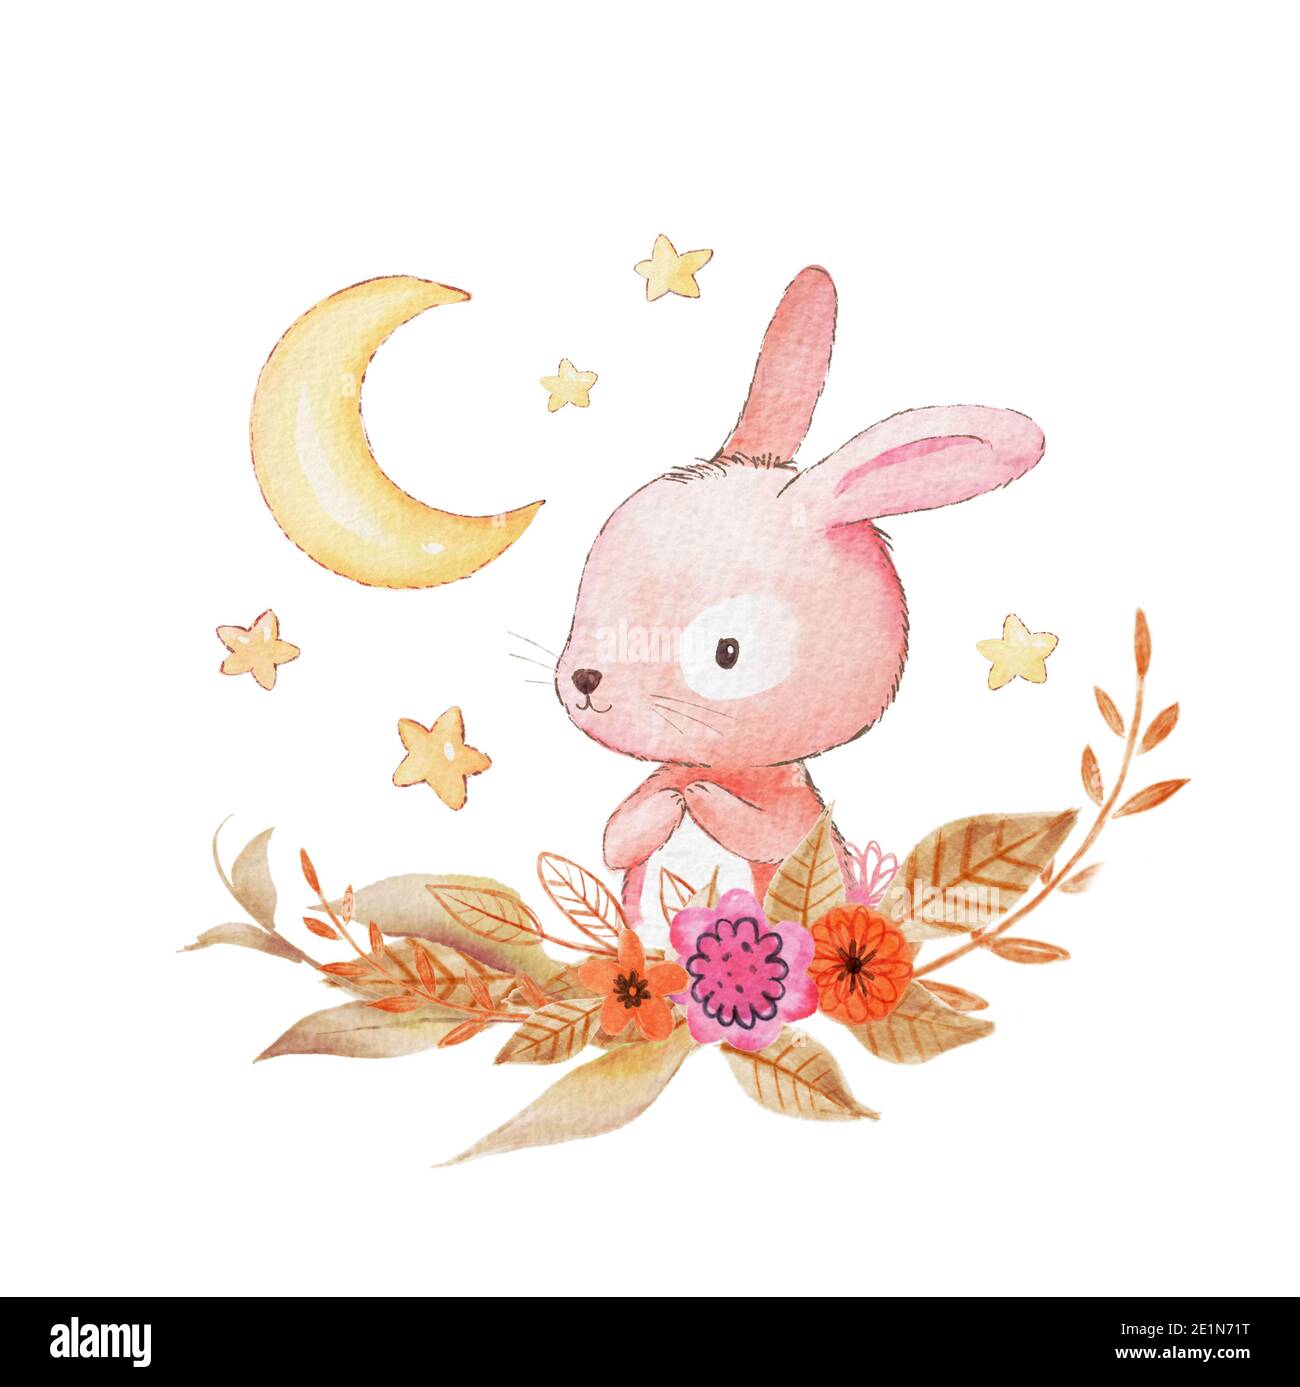 Scheda con due conigli acquerelli. Illustrazione bunny di acquerello disegnata a mano. Luna, stelle, fiori sullo sfondo Foto Stock